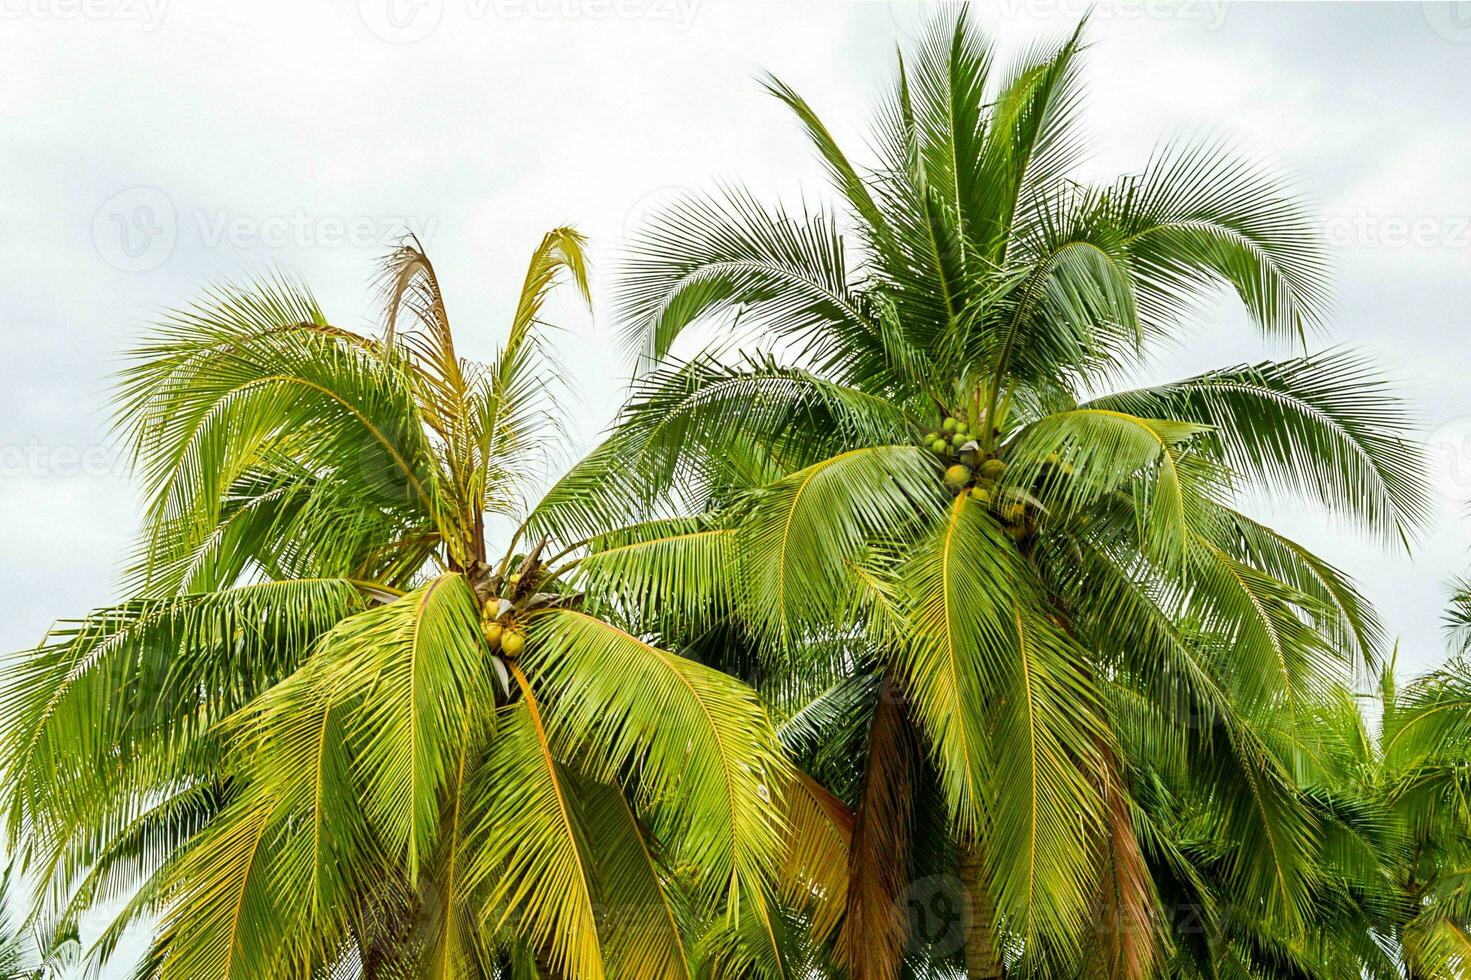 tranquillo tropicale spiaggia con palma alberi e blu mare. foto